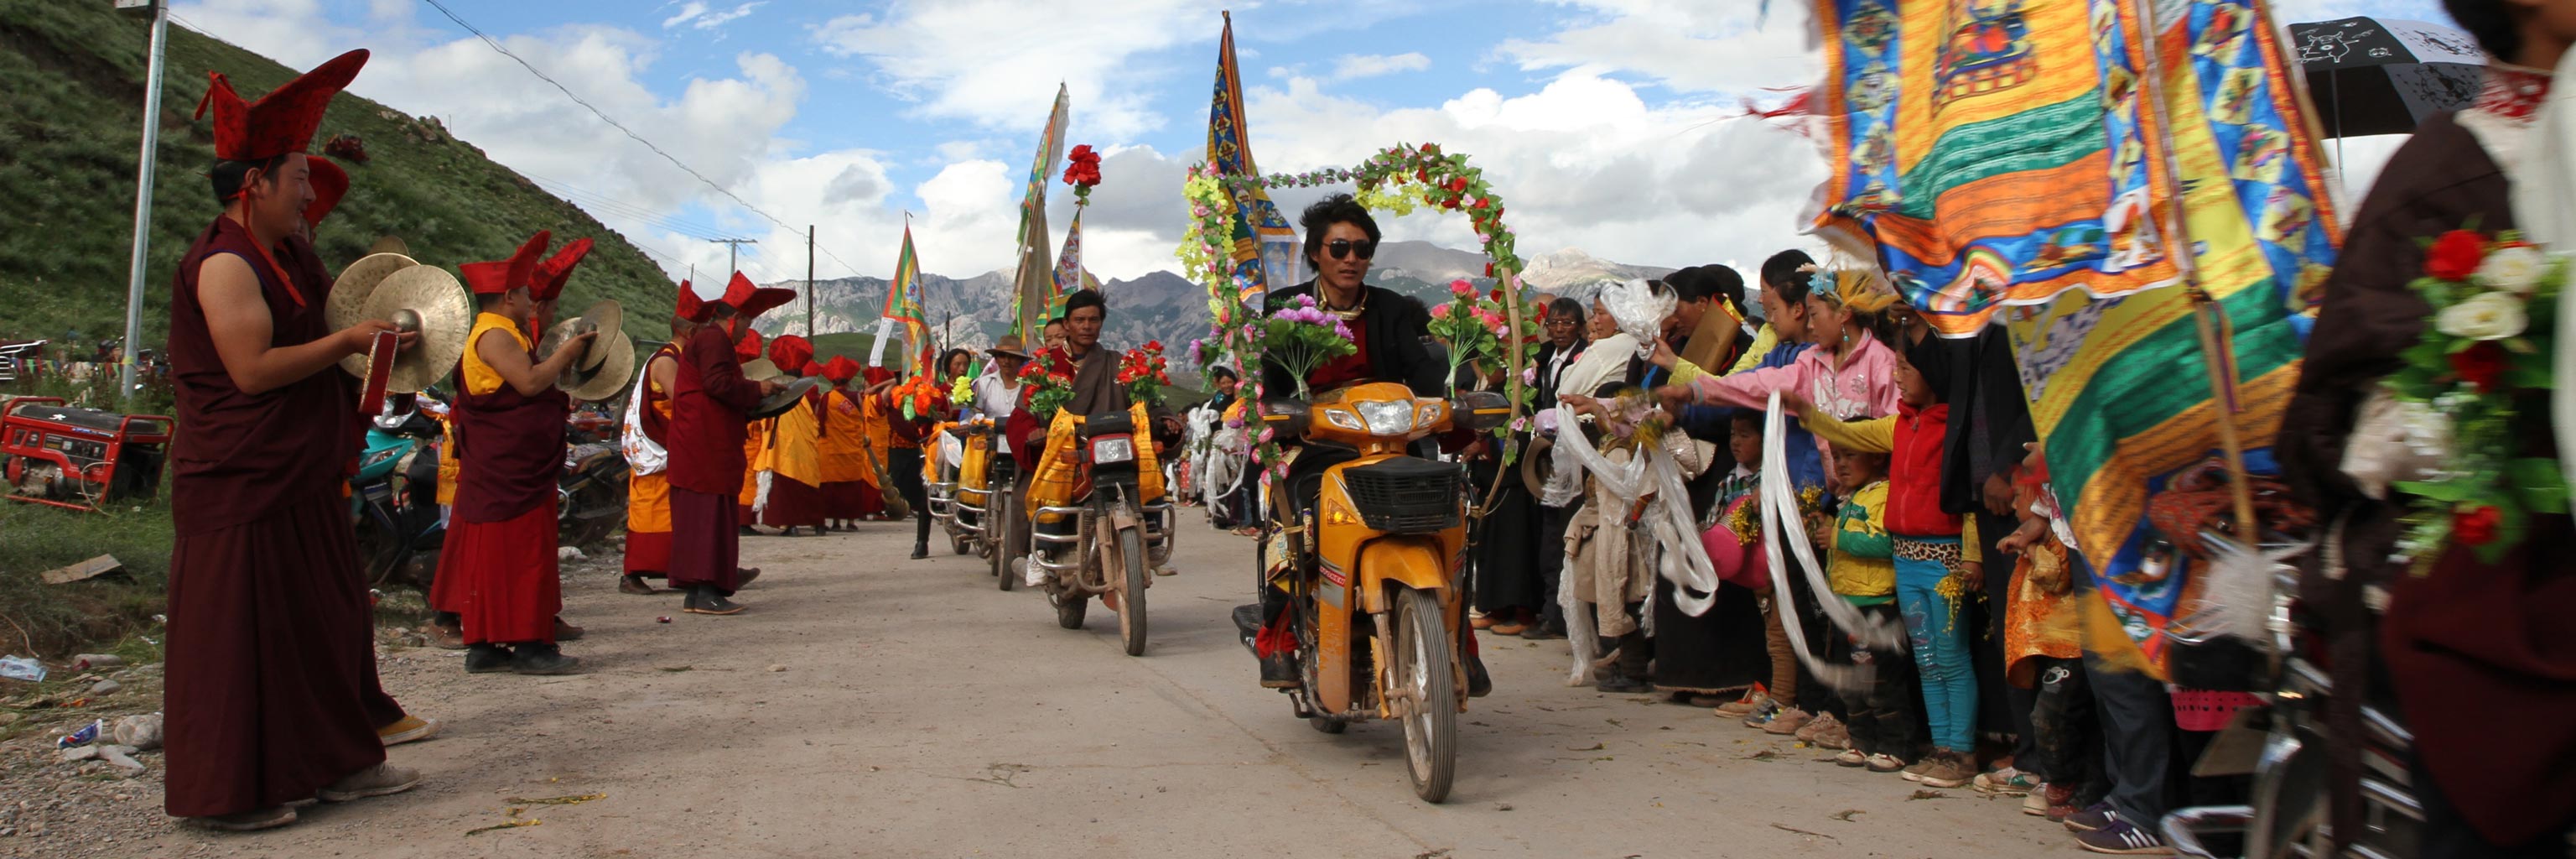 Tibetan parade